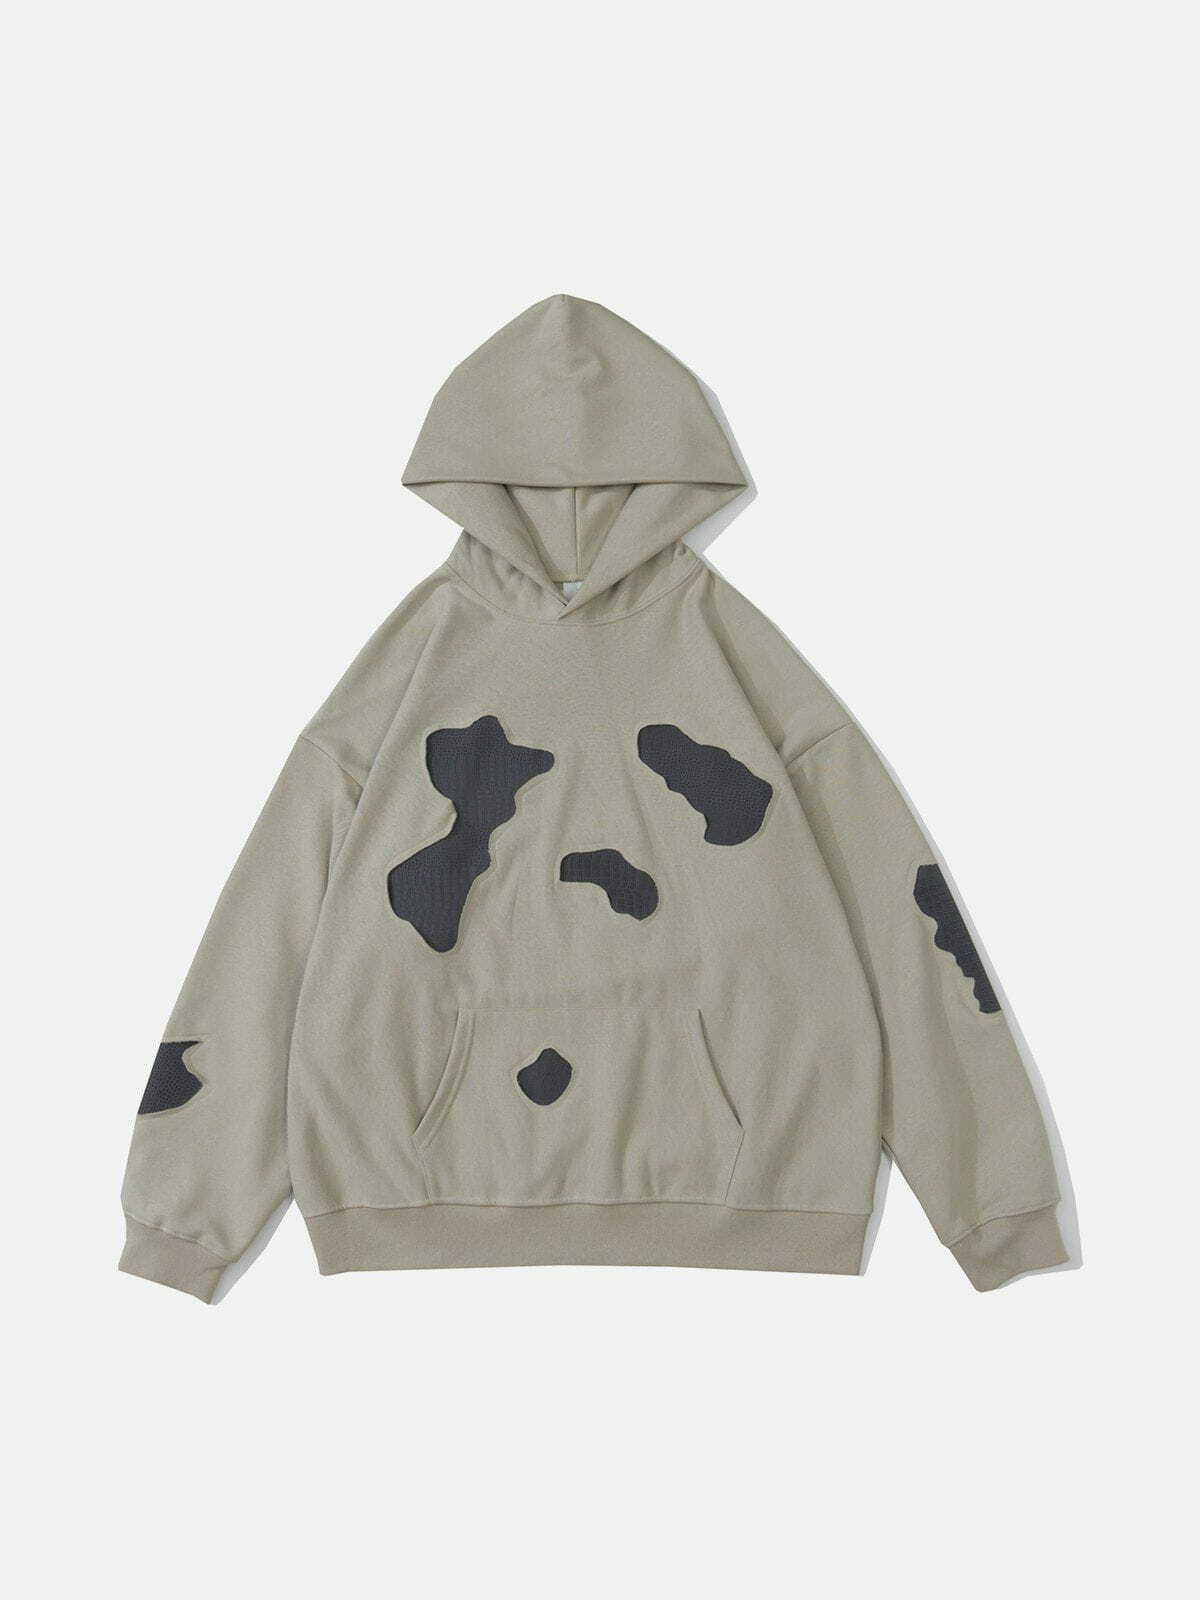 dynamic patchwork hoodie edgy streetwear 1081